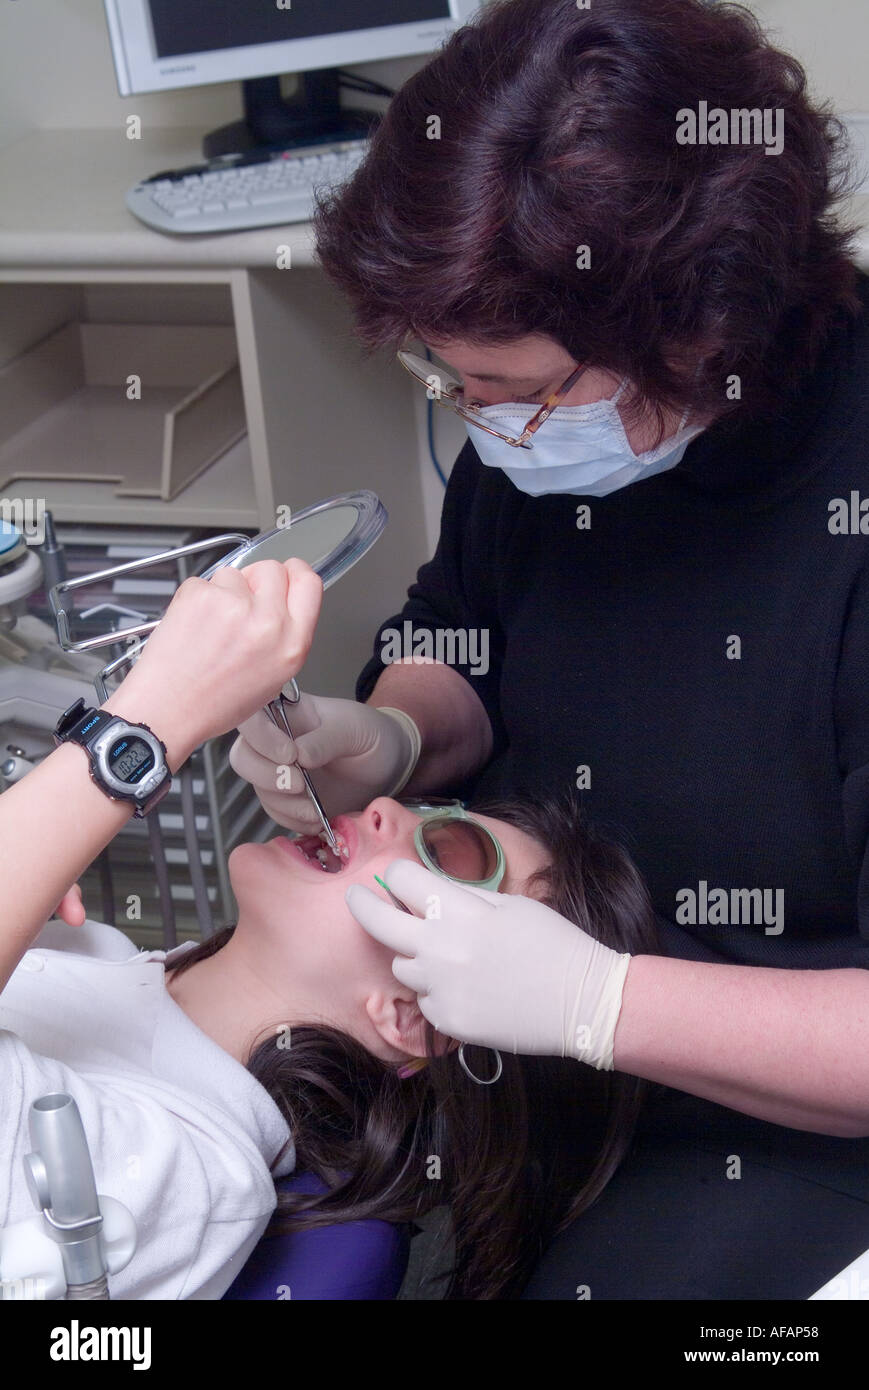 Un jeune garçon utilise un miroir pour examiner son nouvel appareil dentaire Banque D'Images